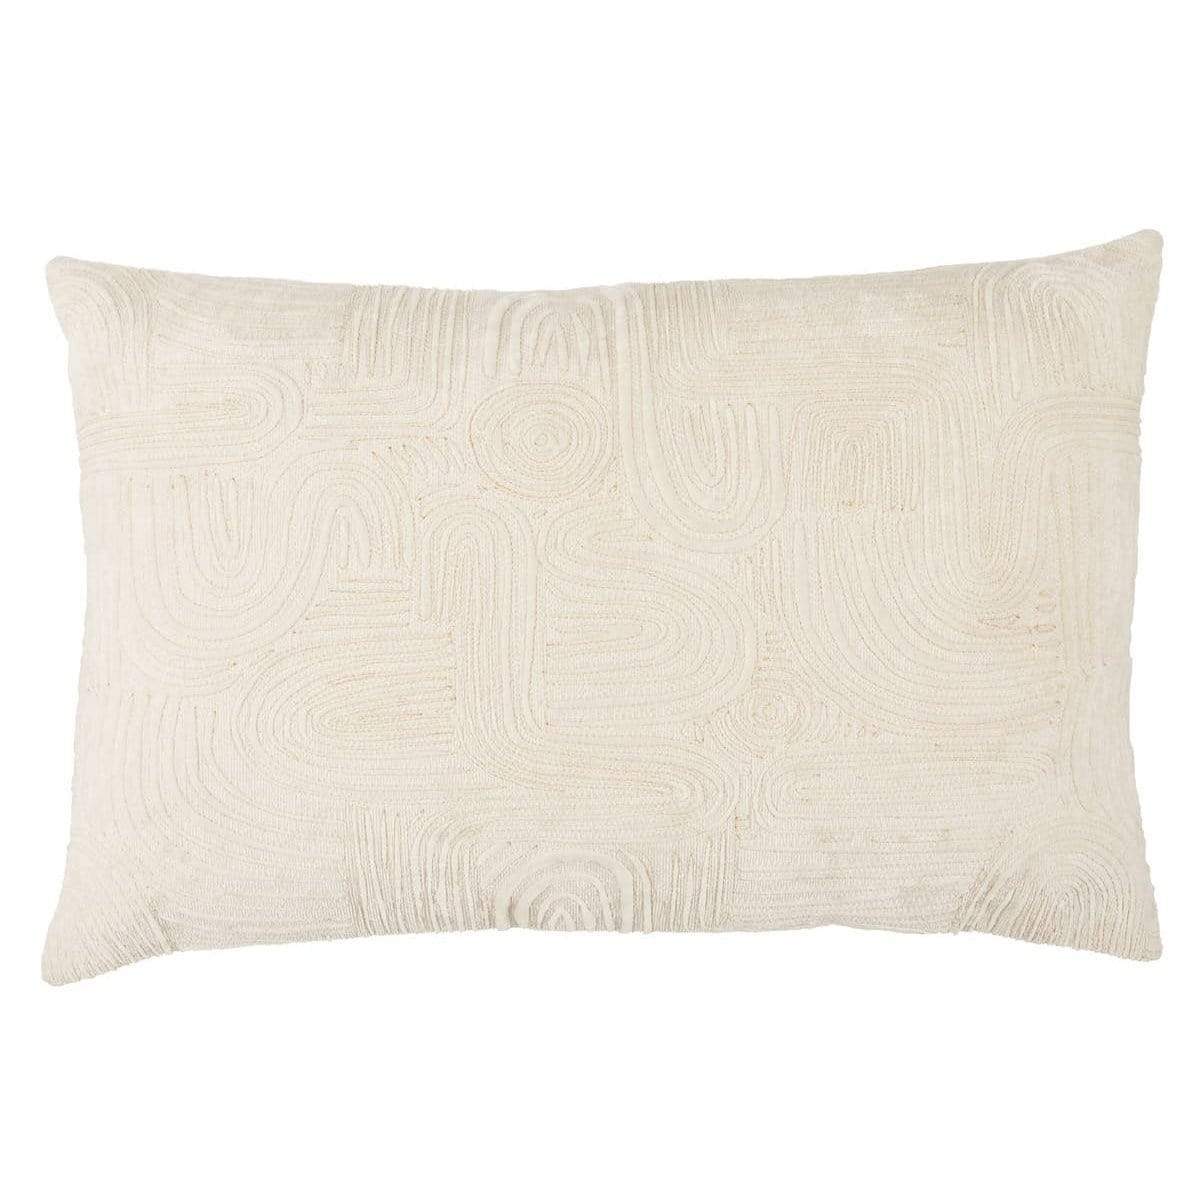 Jaipur Deco By Nikki Chu Lumbar Pillow Pillow & Decor jaipur-PLW103786 887962893020